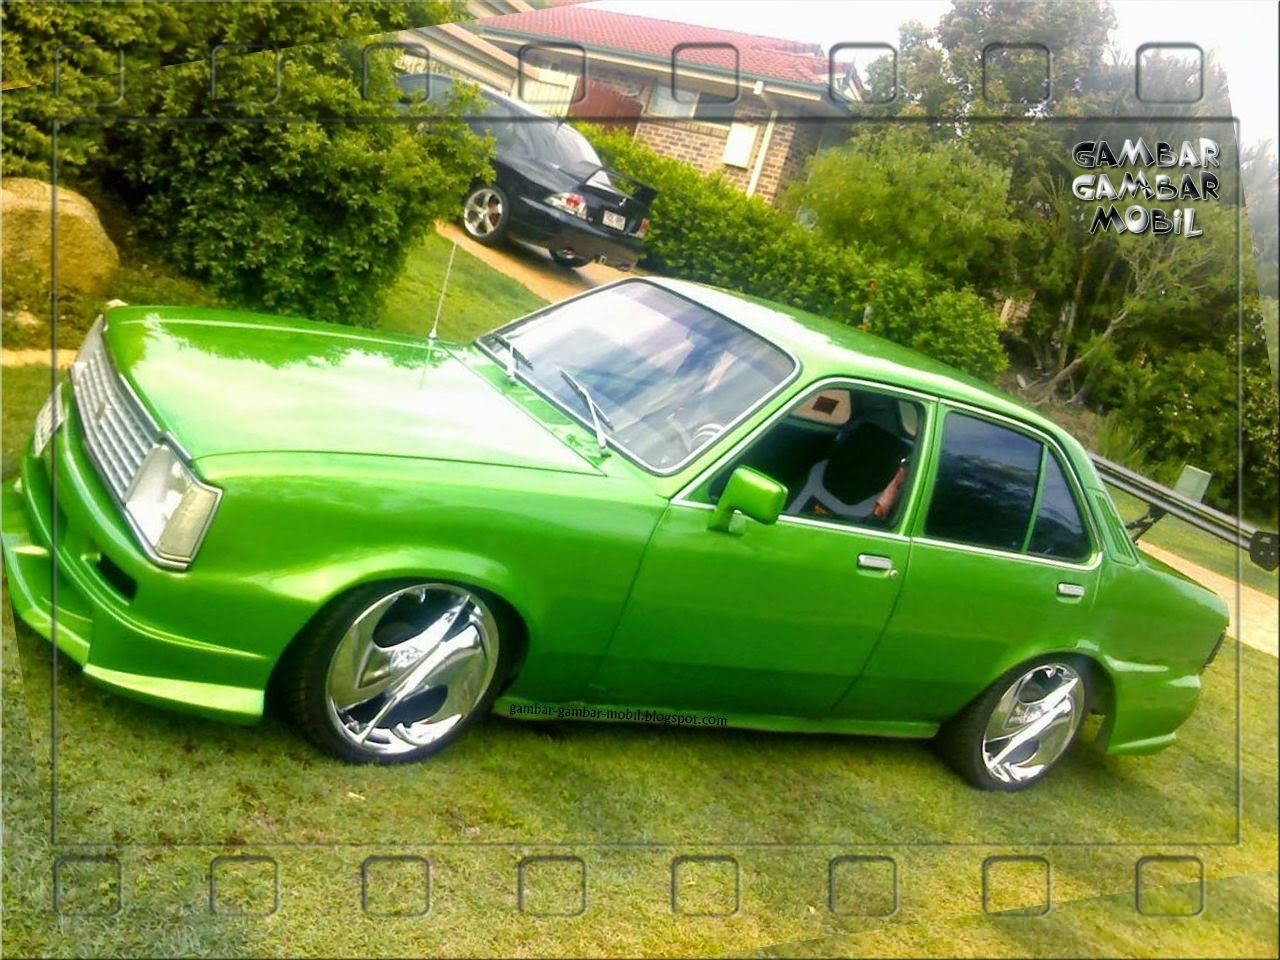 Gambar Mobil Holden CINTA MOBIL